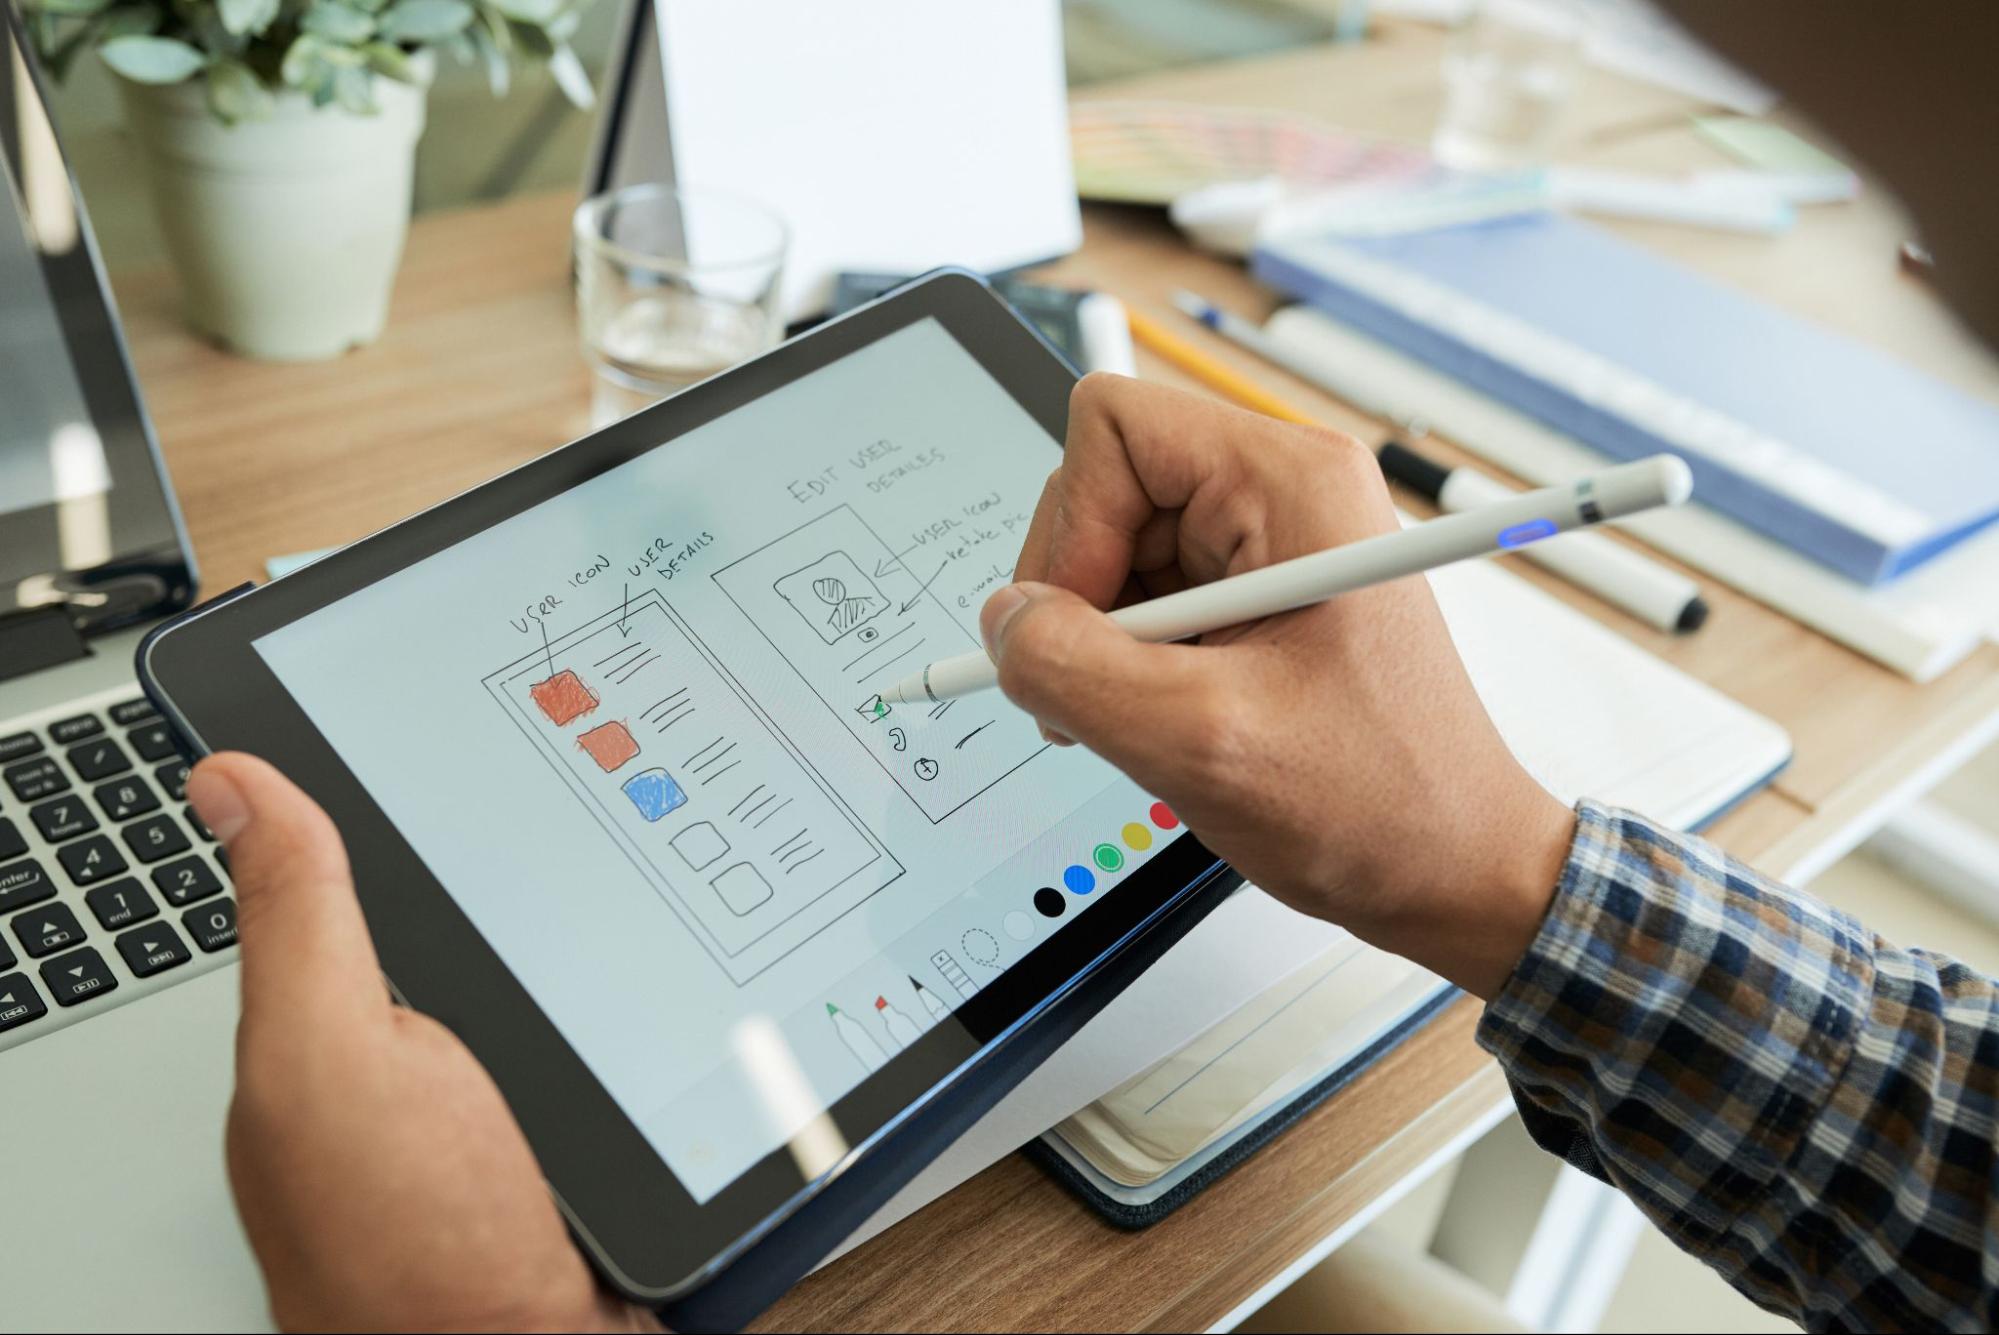 Imagem em que vemos uma pessoa com uma caneta na mão fazendo um projeto em um tablet.